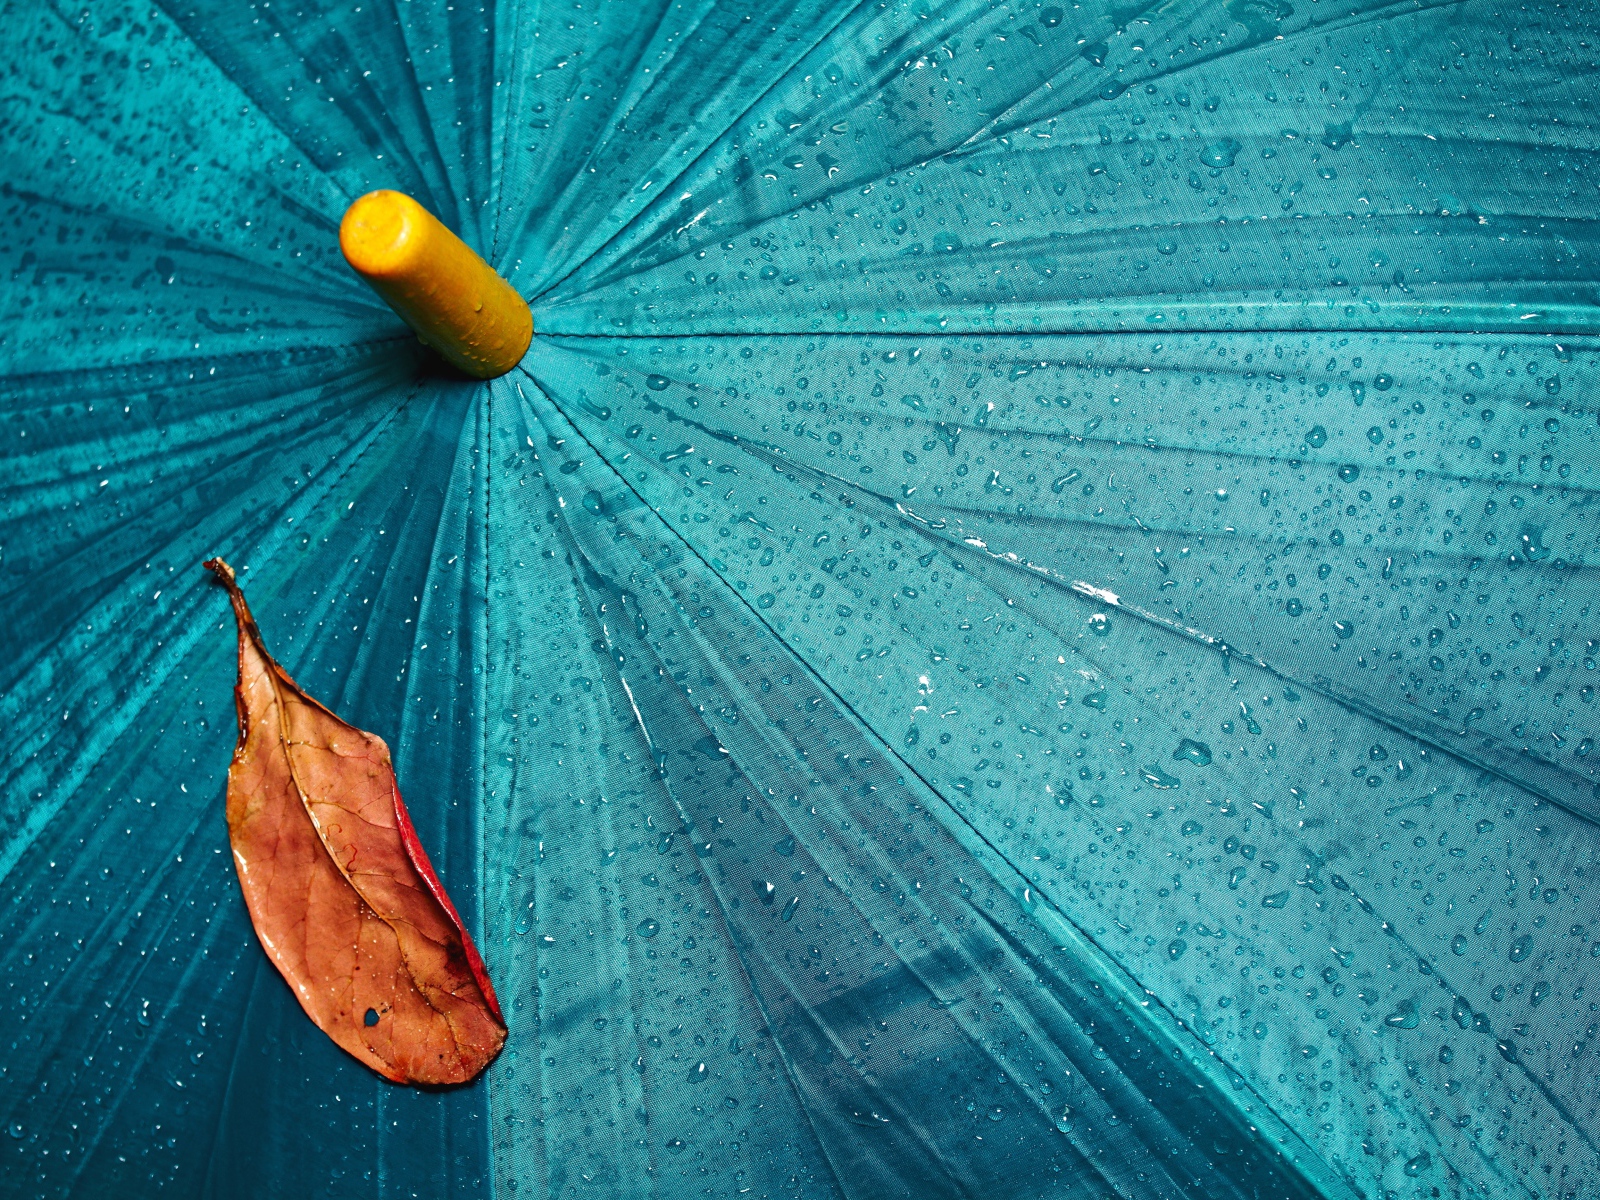 Желтый лист лежит на голубом мокром зонте